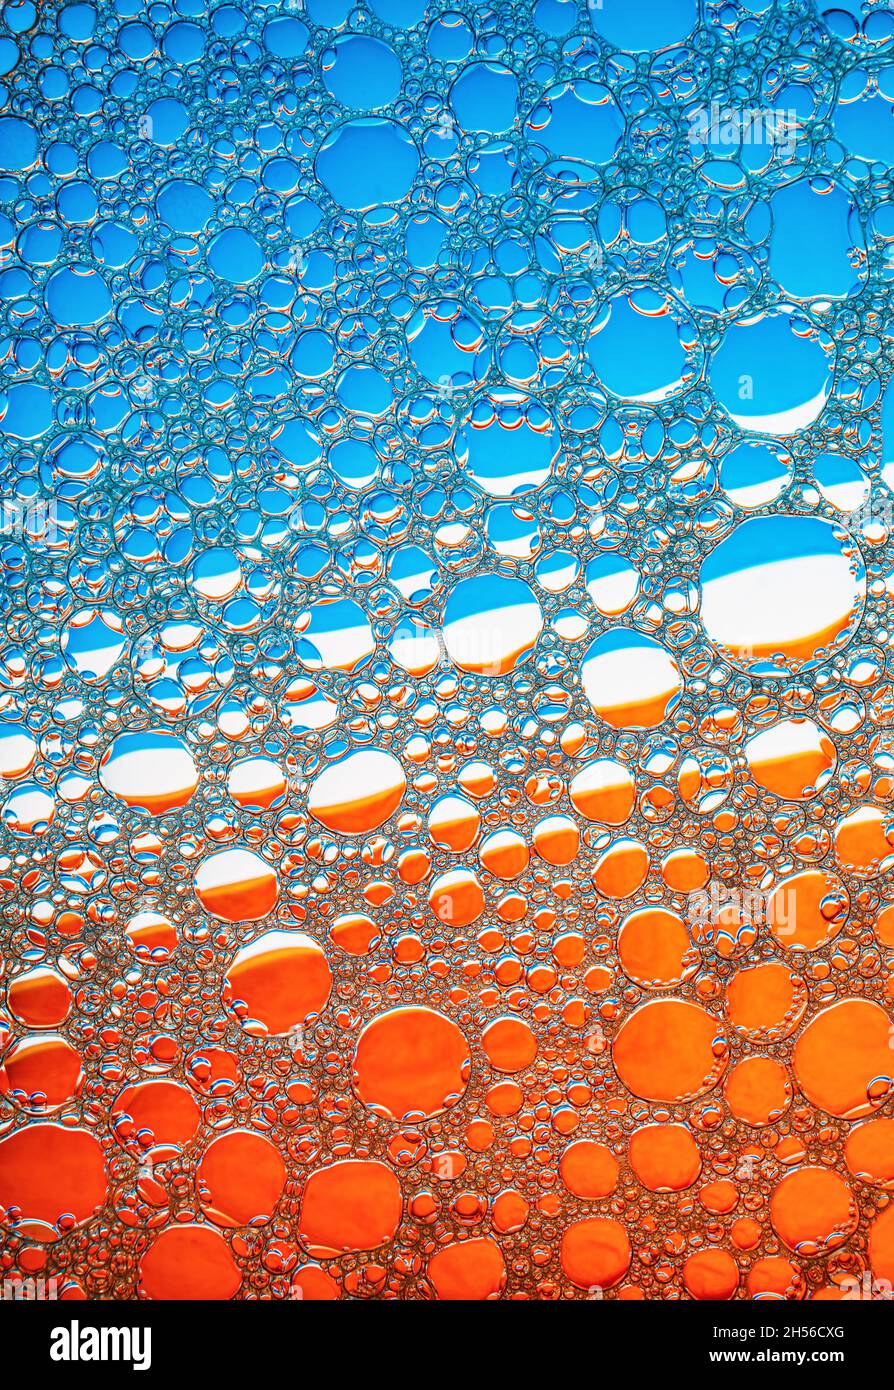 Những bong bóng xanh cam nhẹ nhàng trôi lơ lửng trên nền nước mát làm cho hình ảnh trở nên đầy màu sắc và rực rỡ. Hãy xem hình ảnh này để cảm nhận sự thanh thản và yên bình mà nó mang lại.